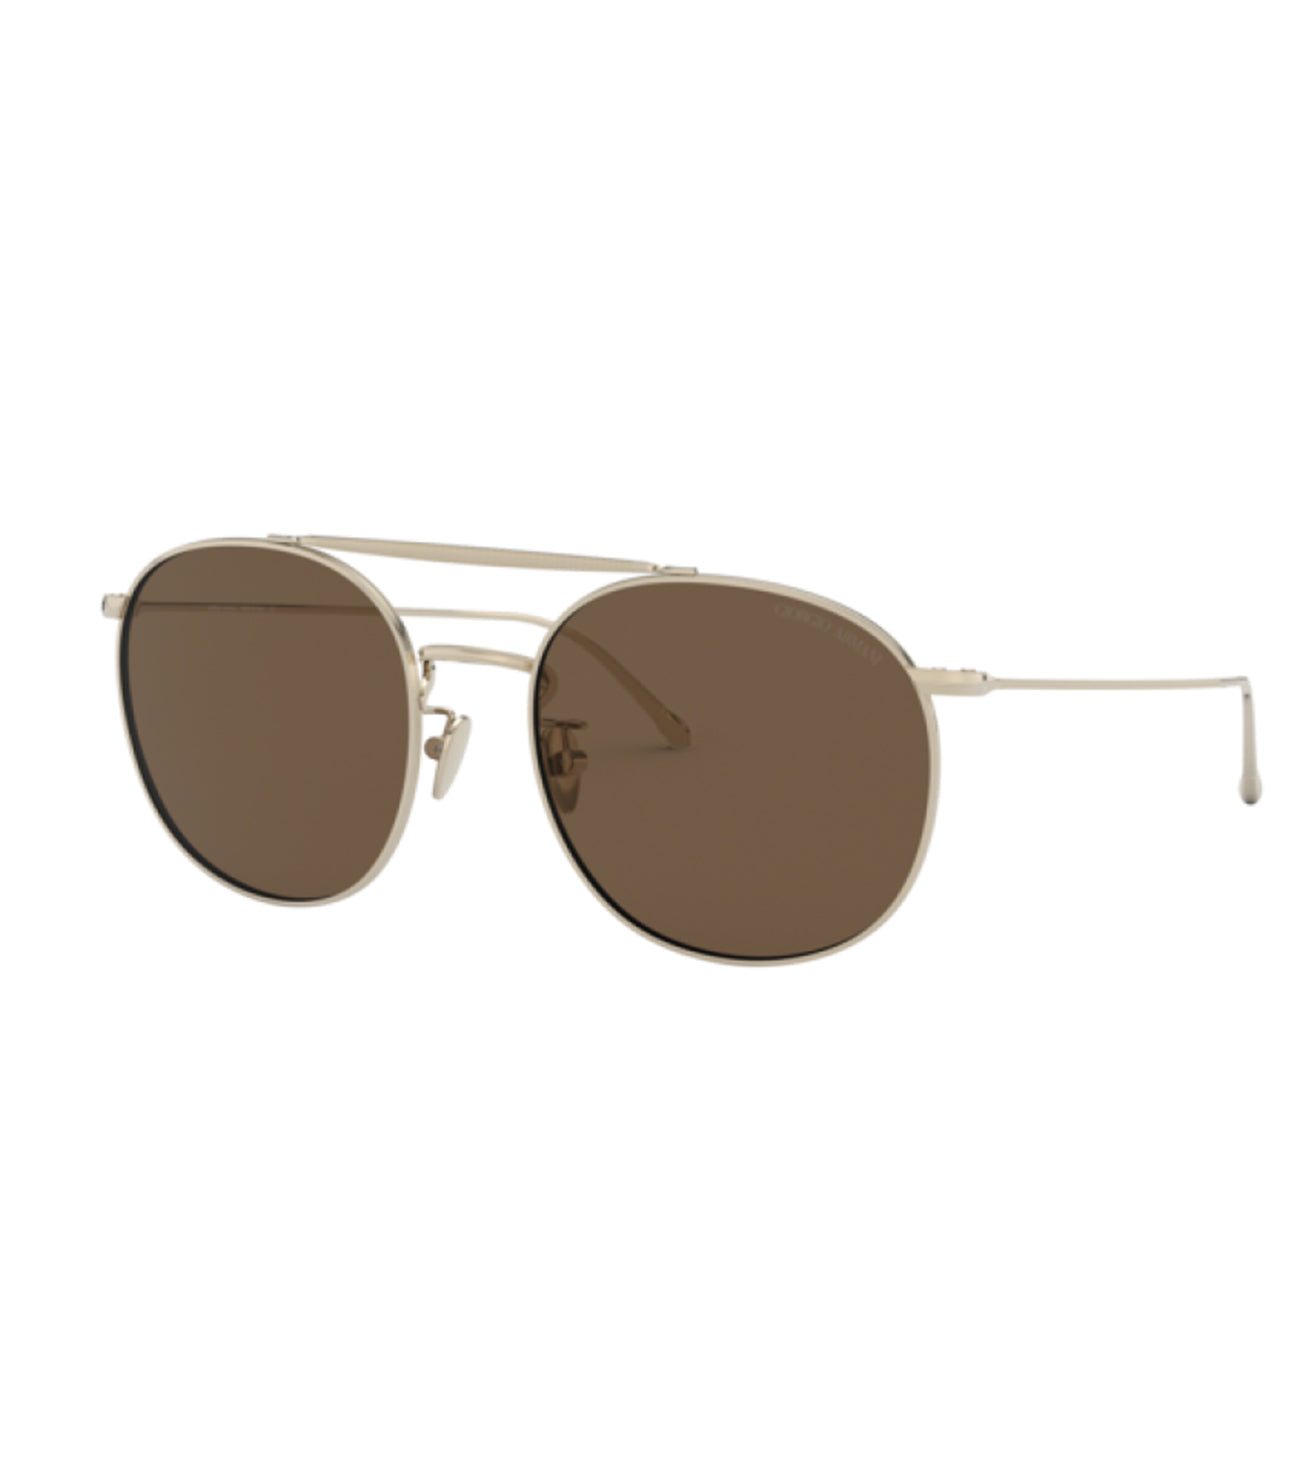 Giorgio Armani Men's Brown Aviator Sunglasses